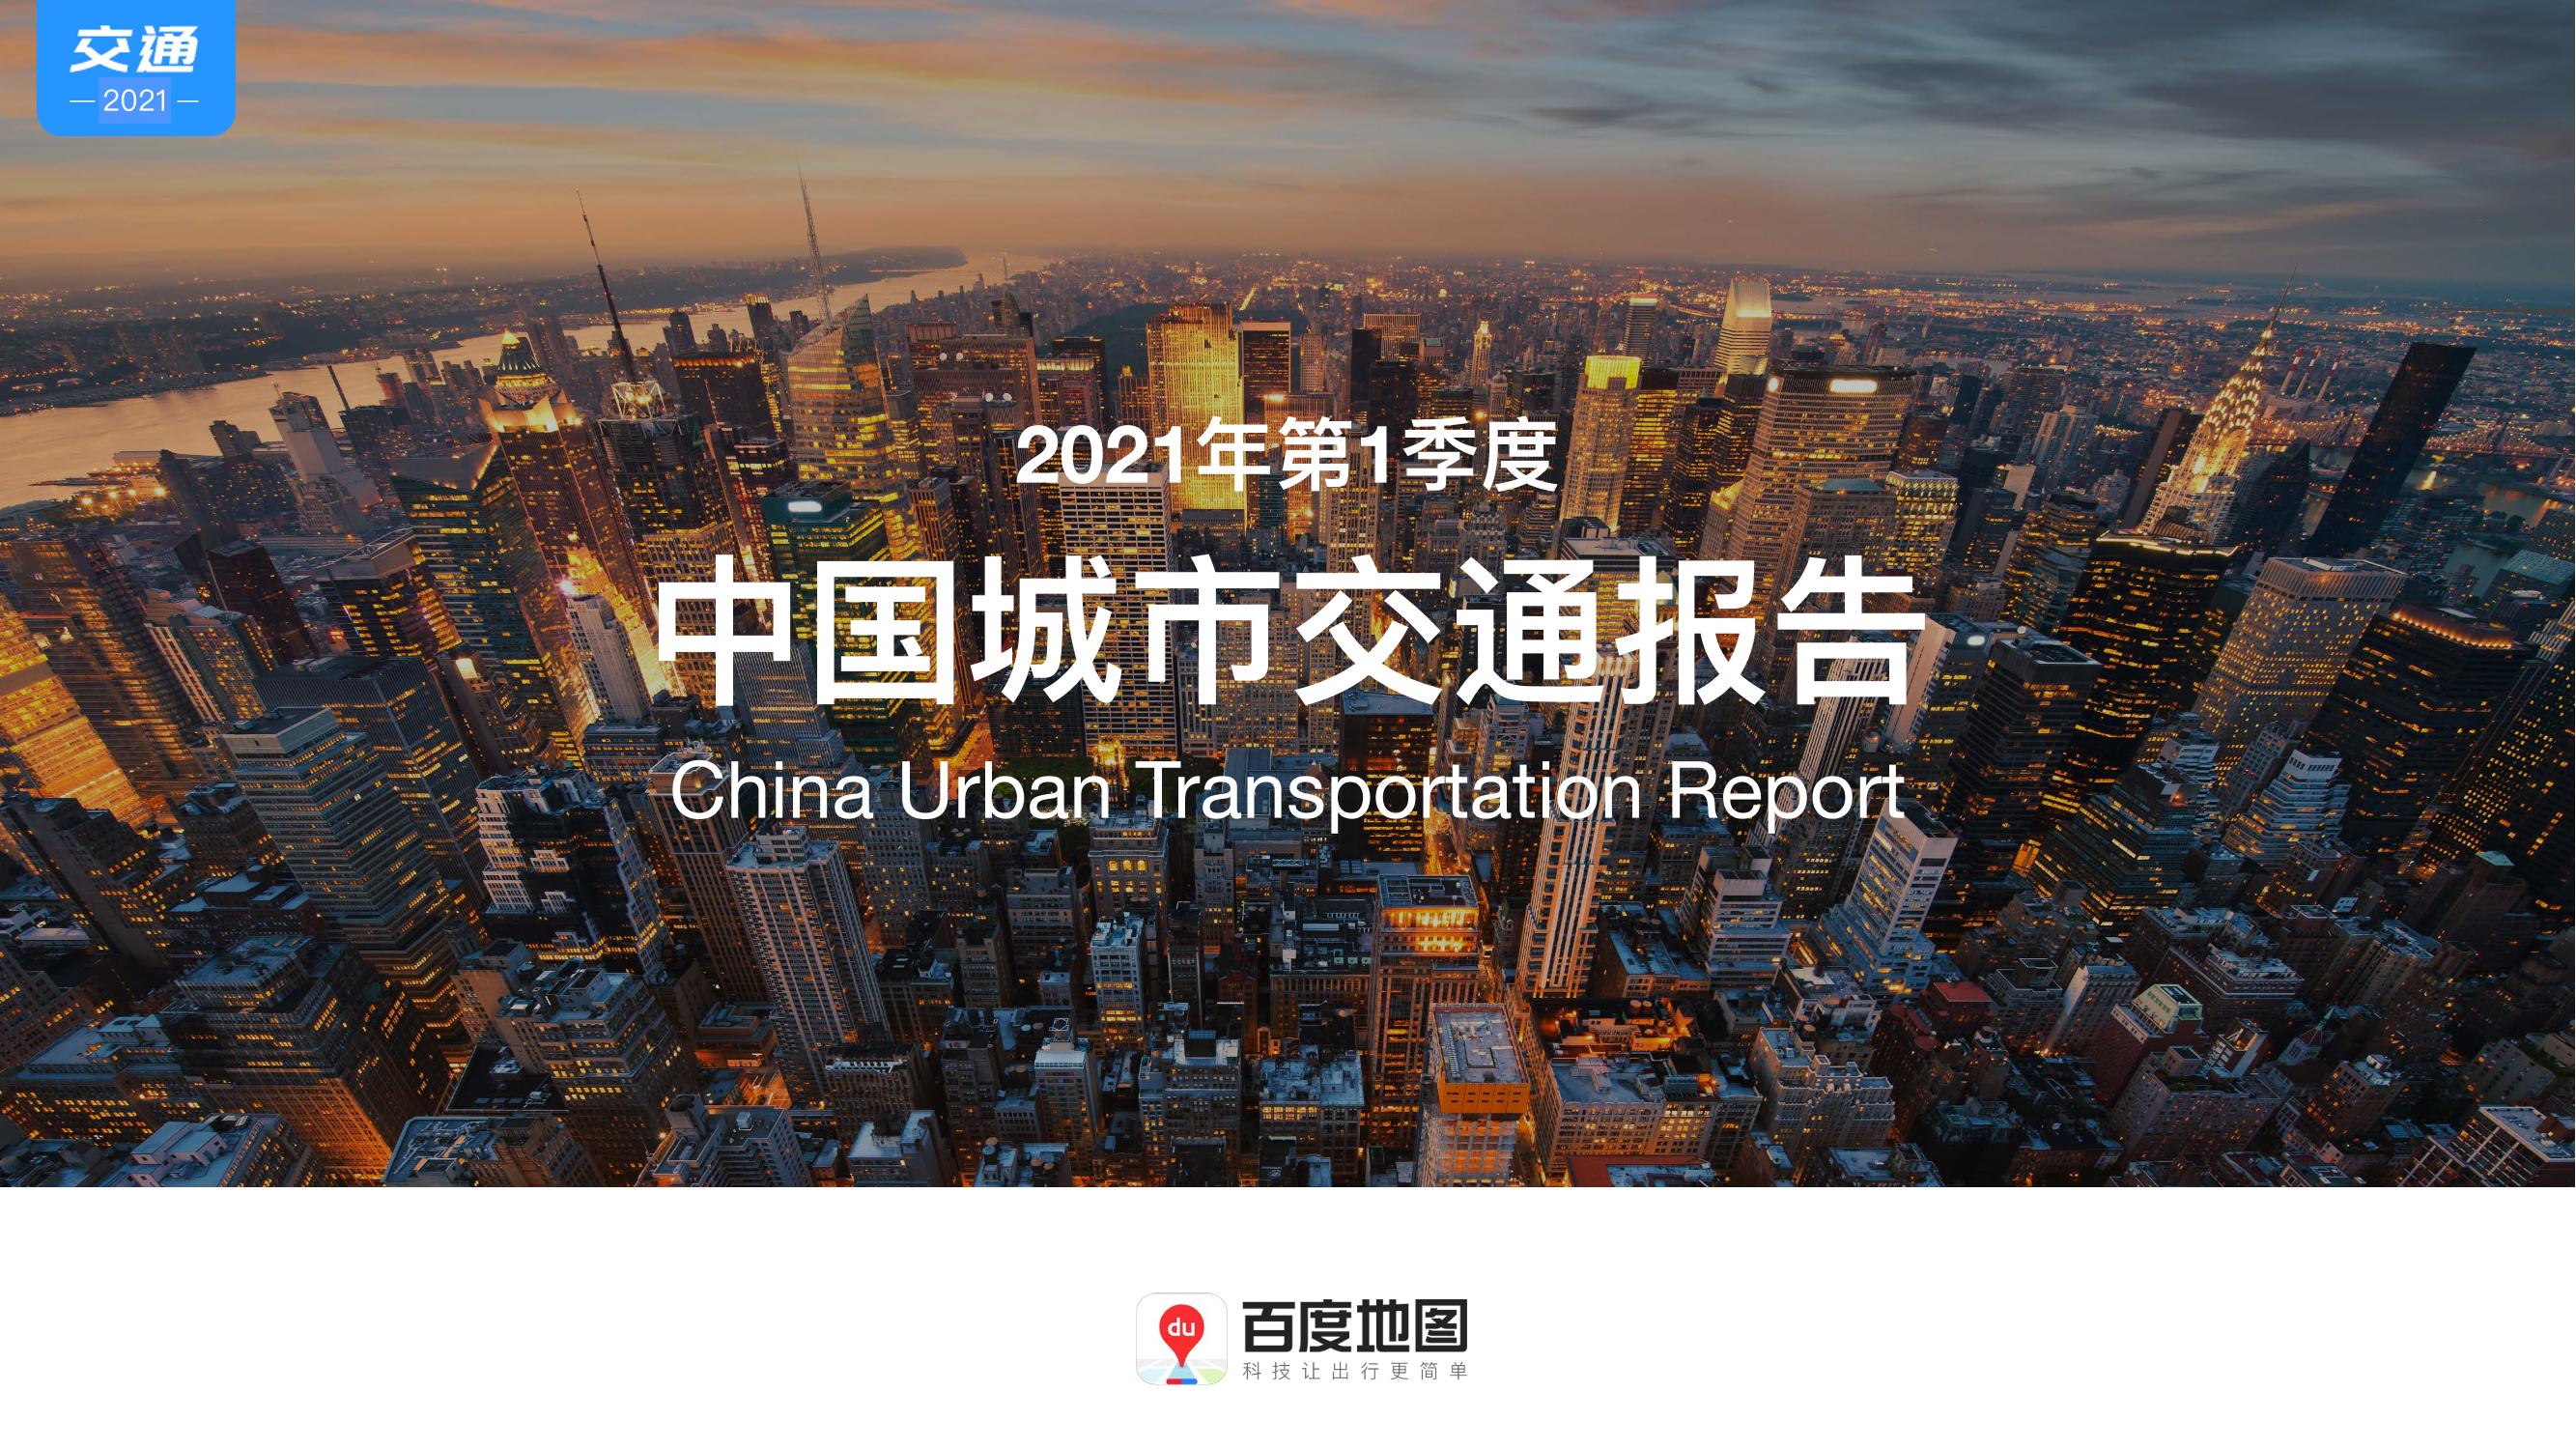 2021年第1季度中国城市交通报告2021年第1季度中国城市交通报告_1.png